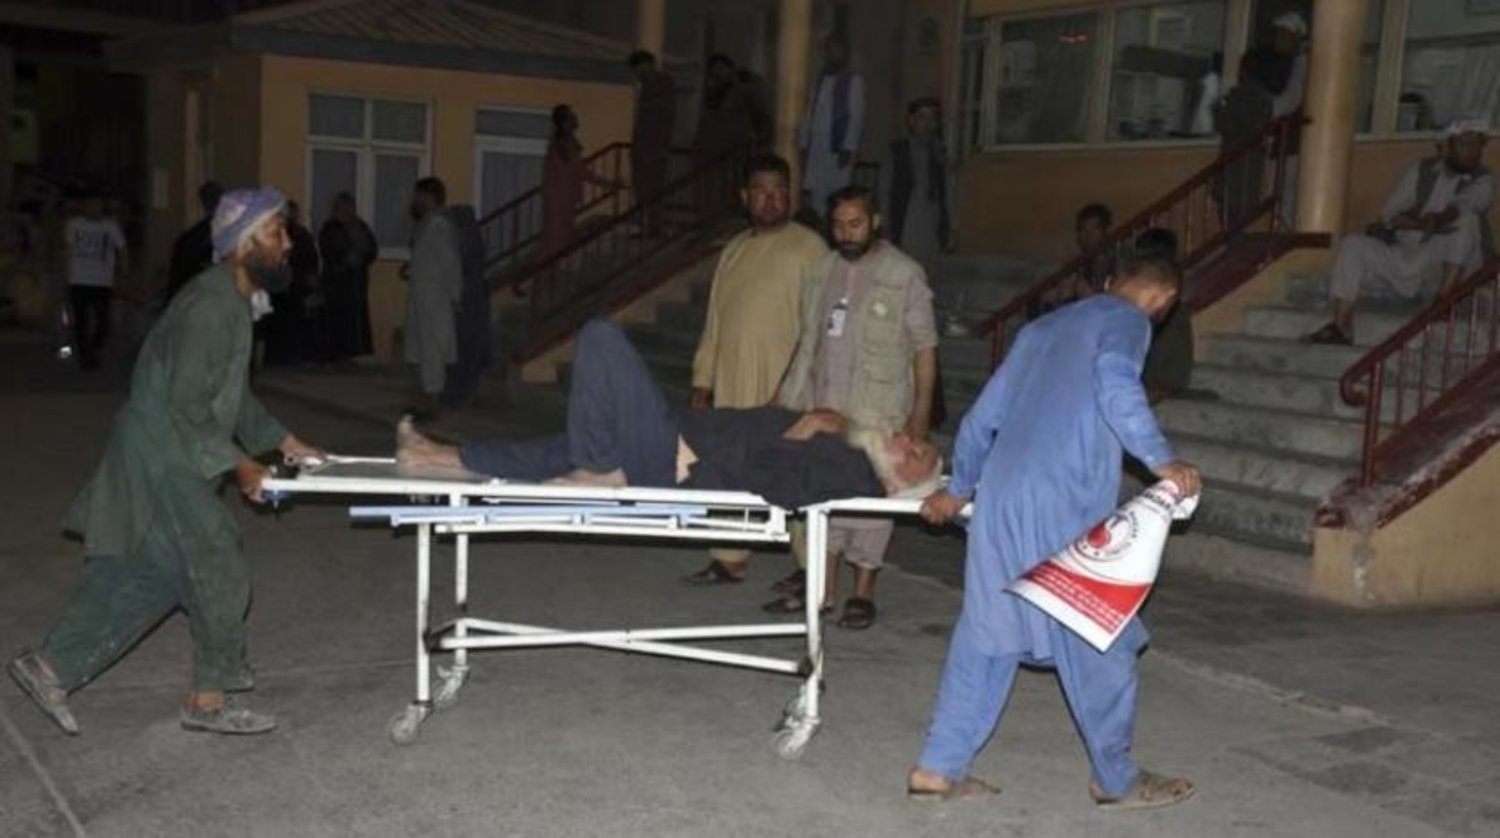 25 Mayıs’ta Mezar-ı Şerif kentinde meydana gelen patlamanın ardından bir kişi, hastaneye kaldırıldı (AFP)